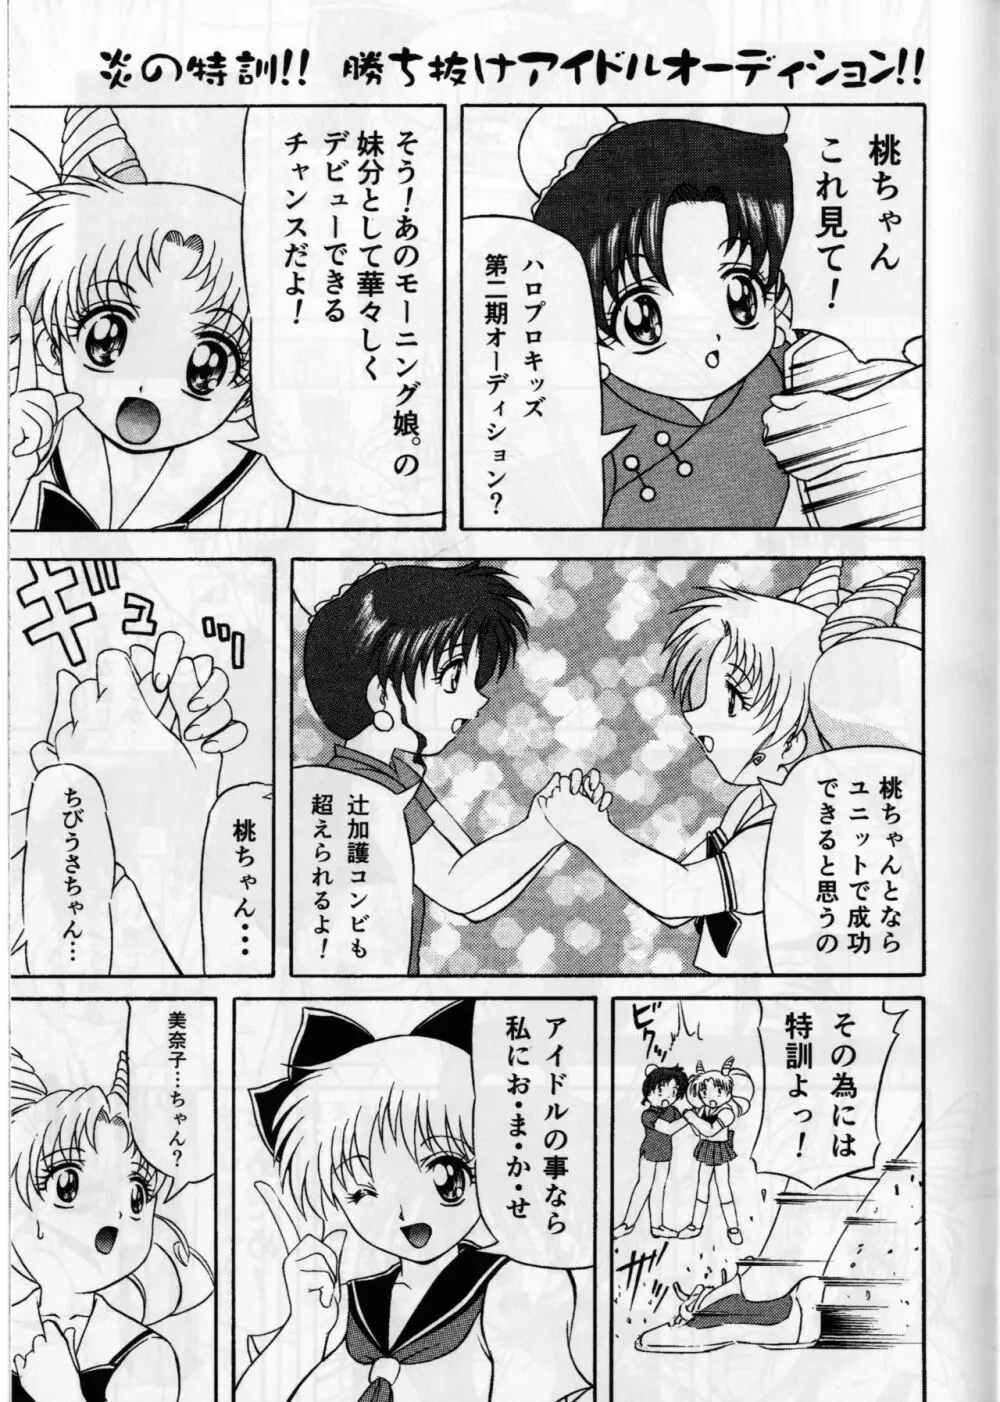 ぴんく・しゅがぁ 20th Anniversary Special 7ページ